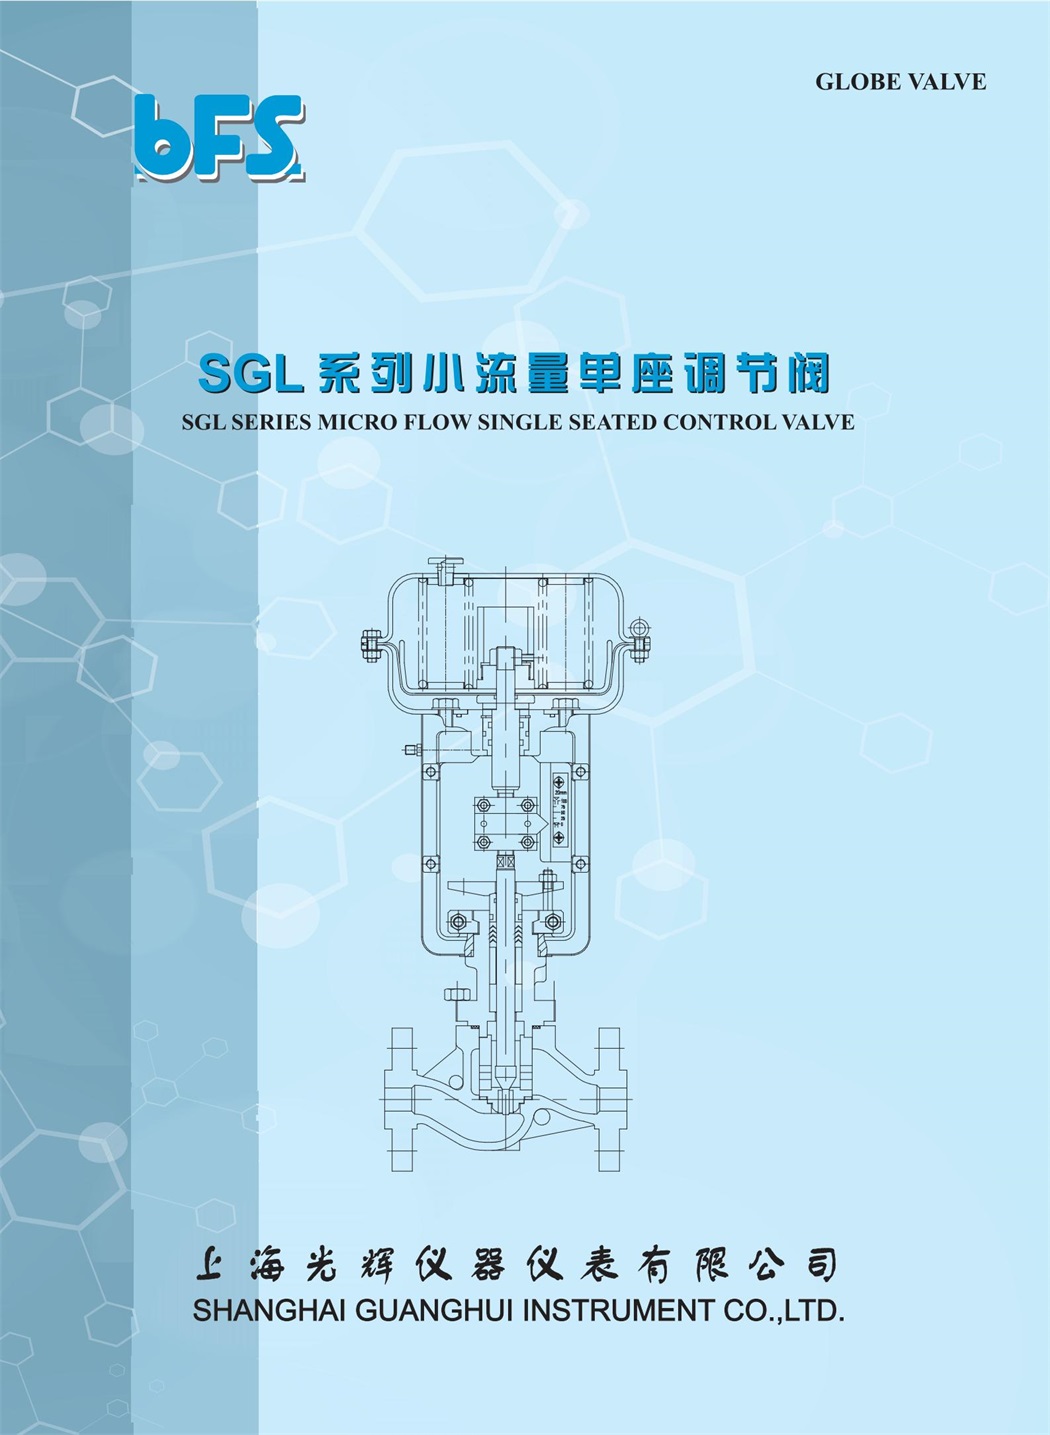  SGL 系列小流量單座調節閥